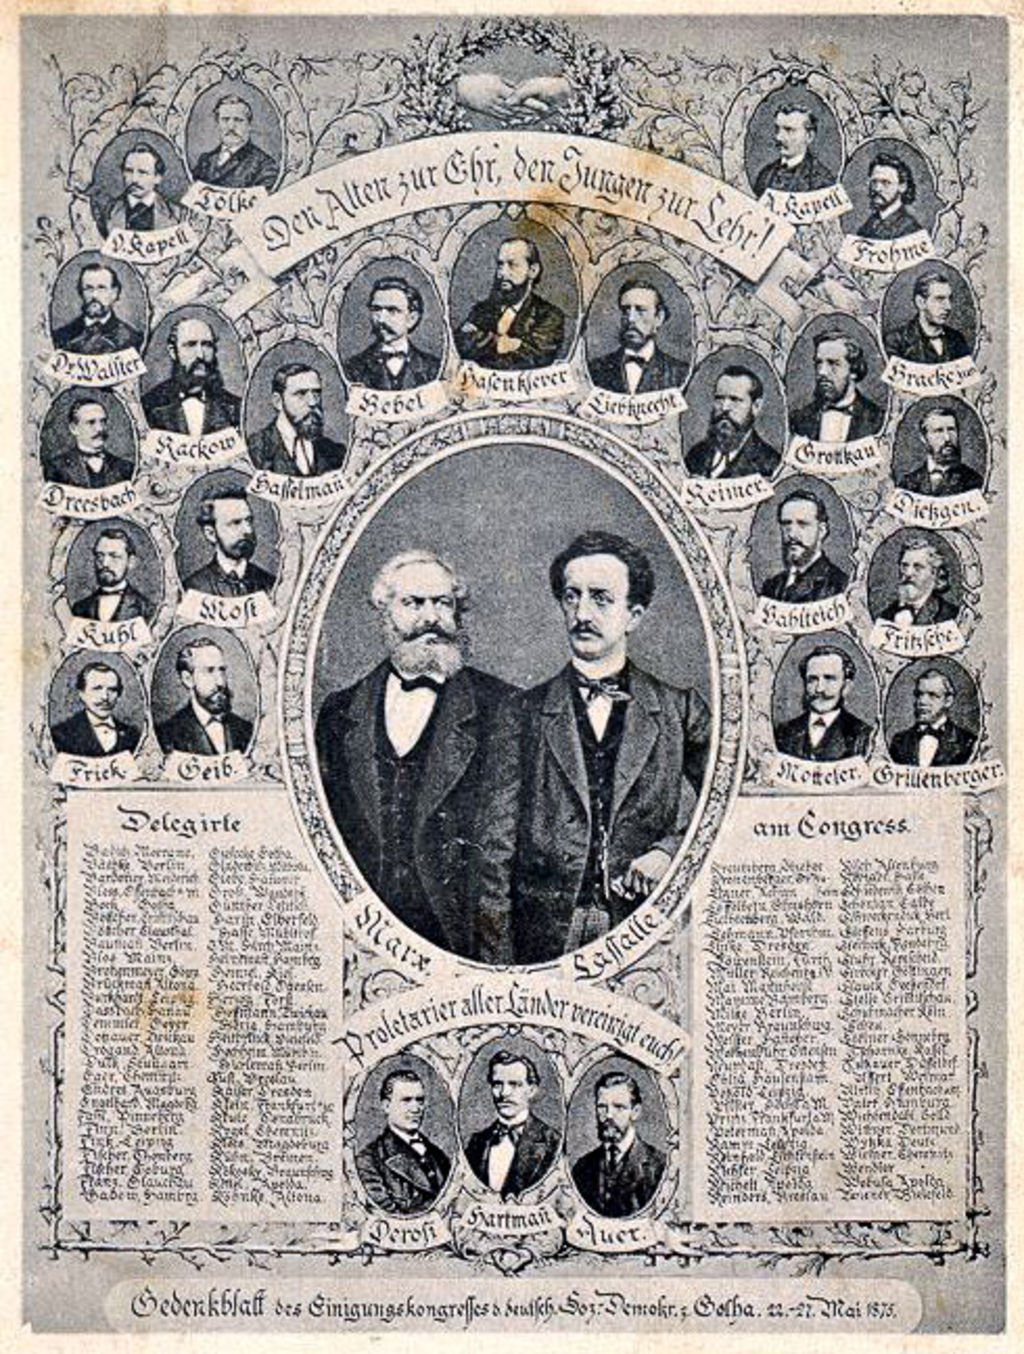 Postkarte zur Erinnerung an den Gothaer Kongress 1875